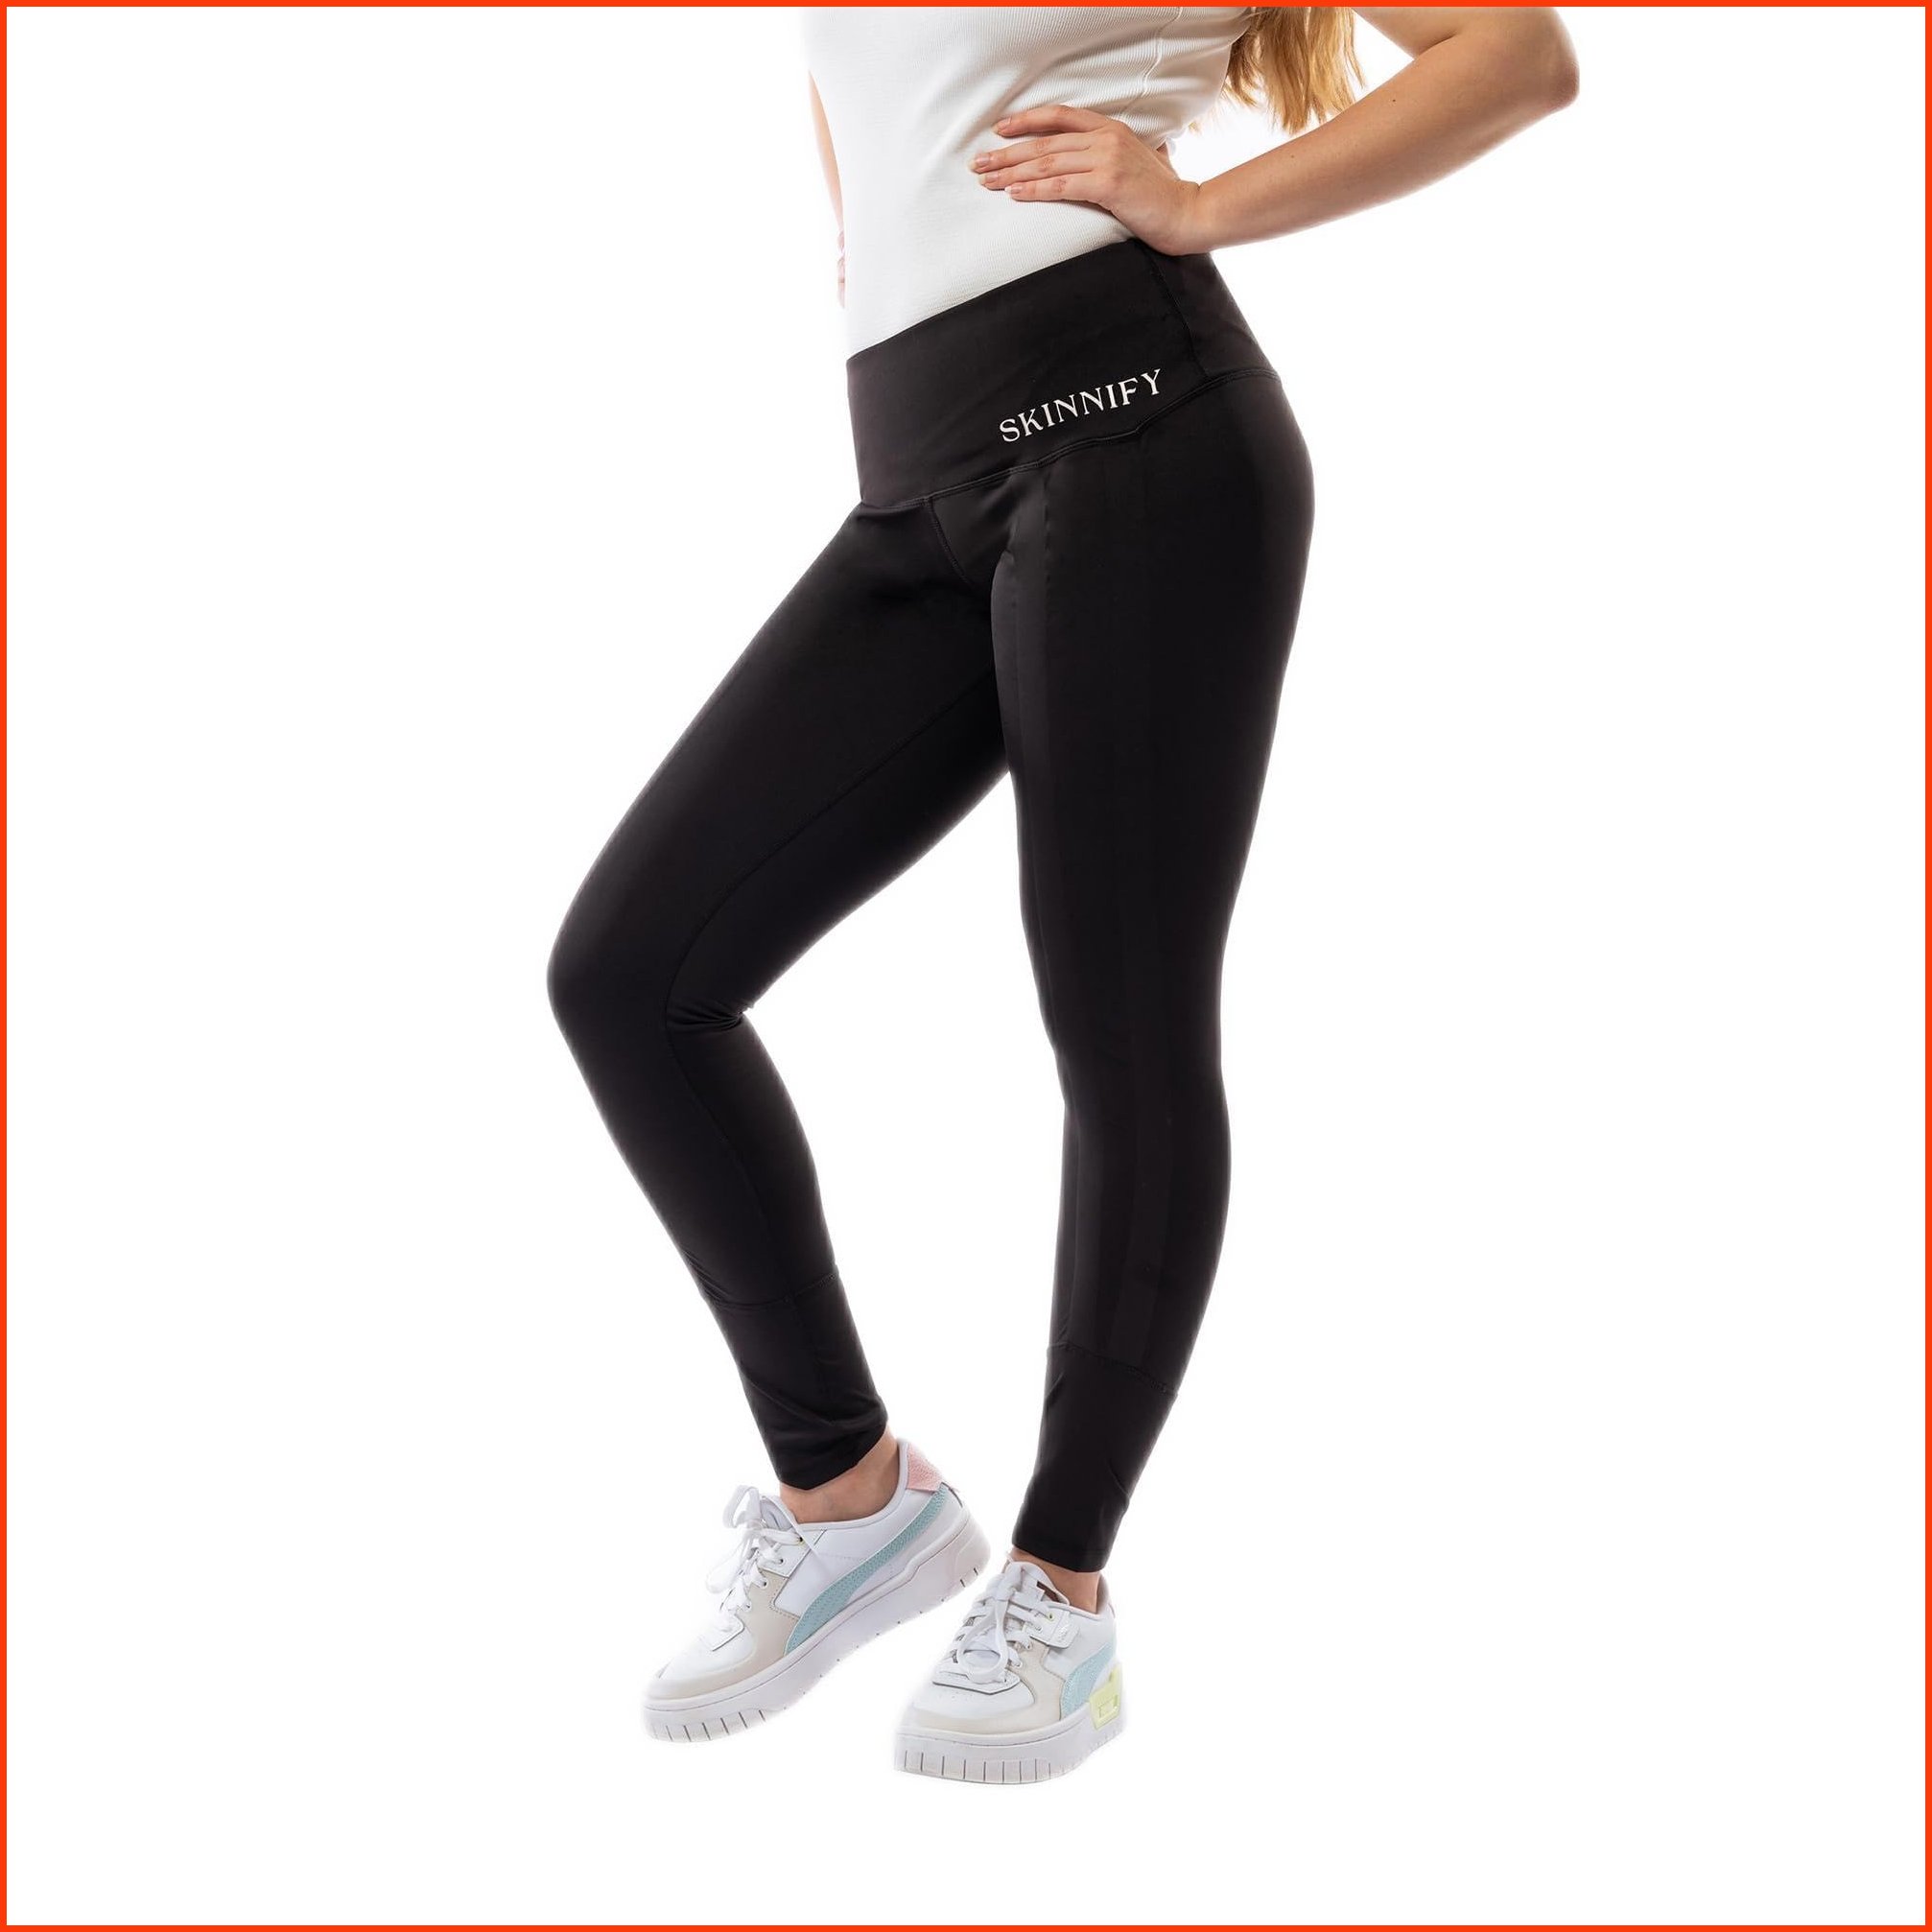 並行輸入品Skinnify 1 x Black Leggings with Built-in Resistance Bands for Women Weight Loss Pants for Daily Usage Hig